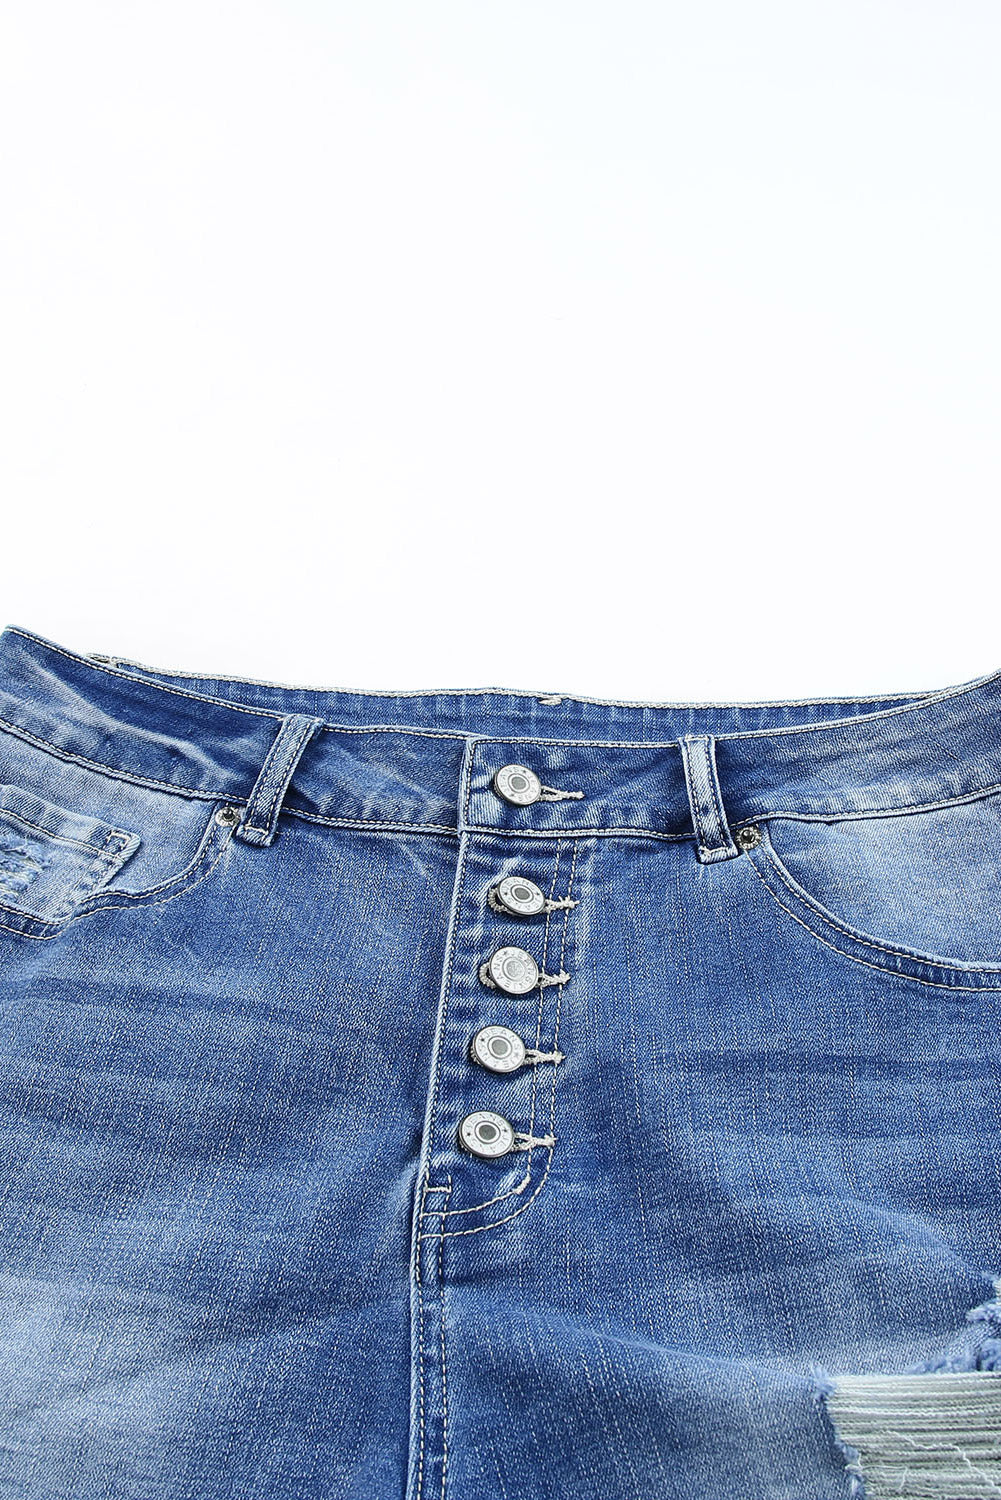 Himmelblaue Jeansshorts mit fünffachem Knopfverschluss und hohem Bund